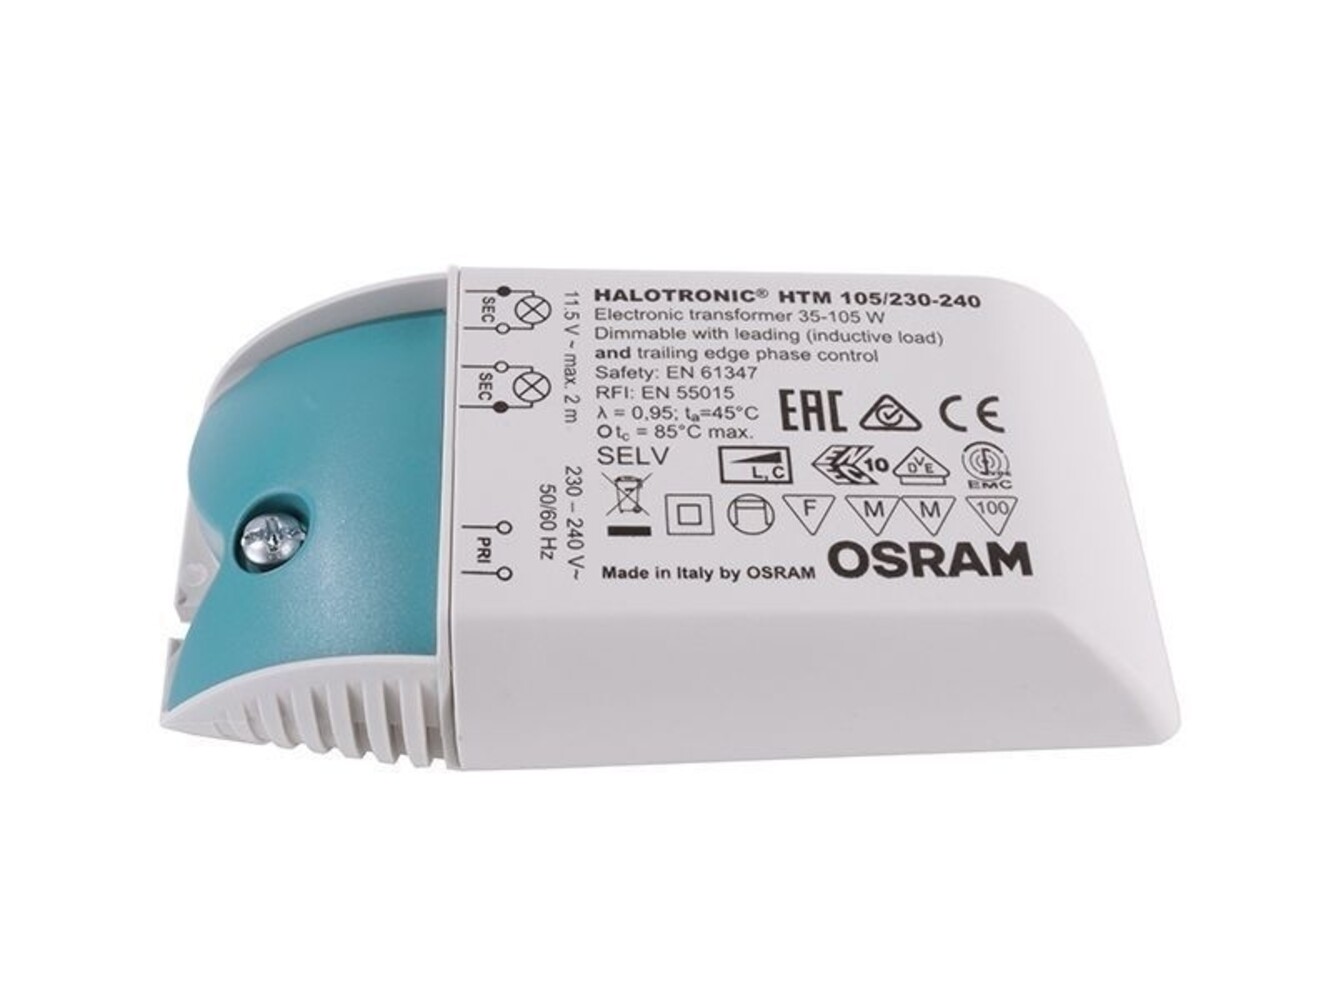 Hochwertiges LED-Netzteil von OSRAM, dimmbar und spannungskonstant